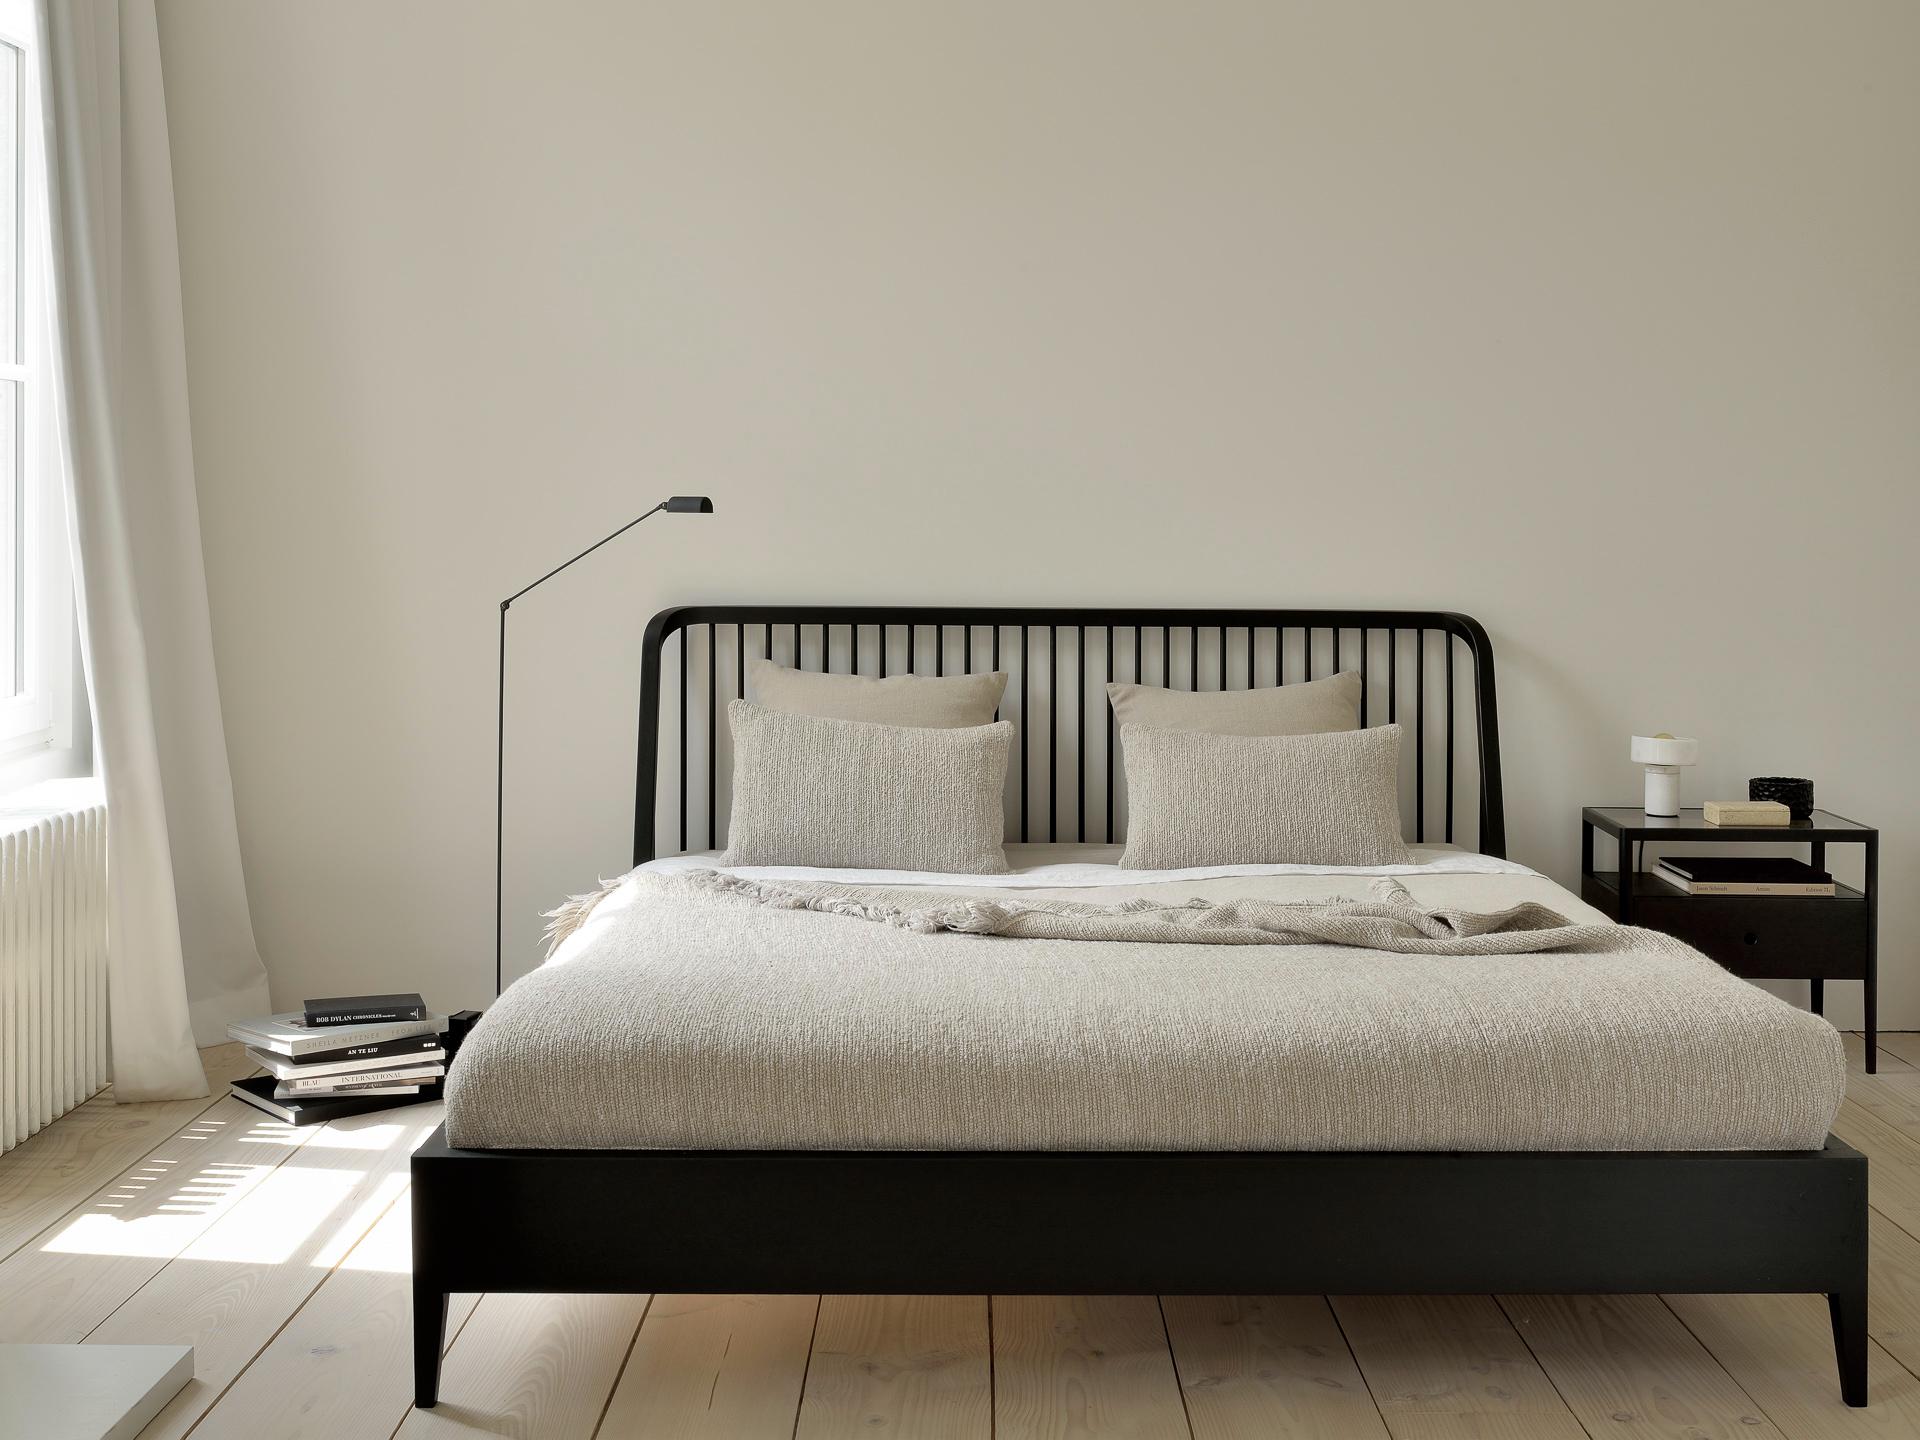 Black Spindle bed and bedside table in varnished wood | Live Light 